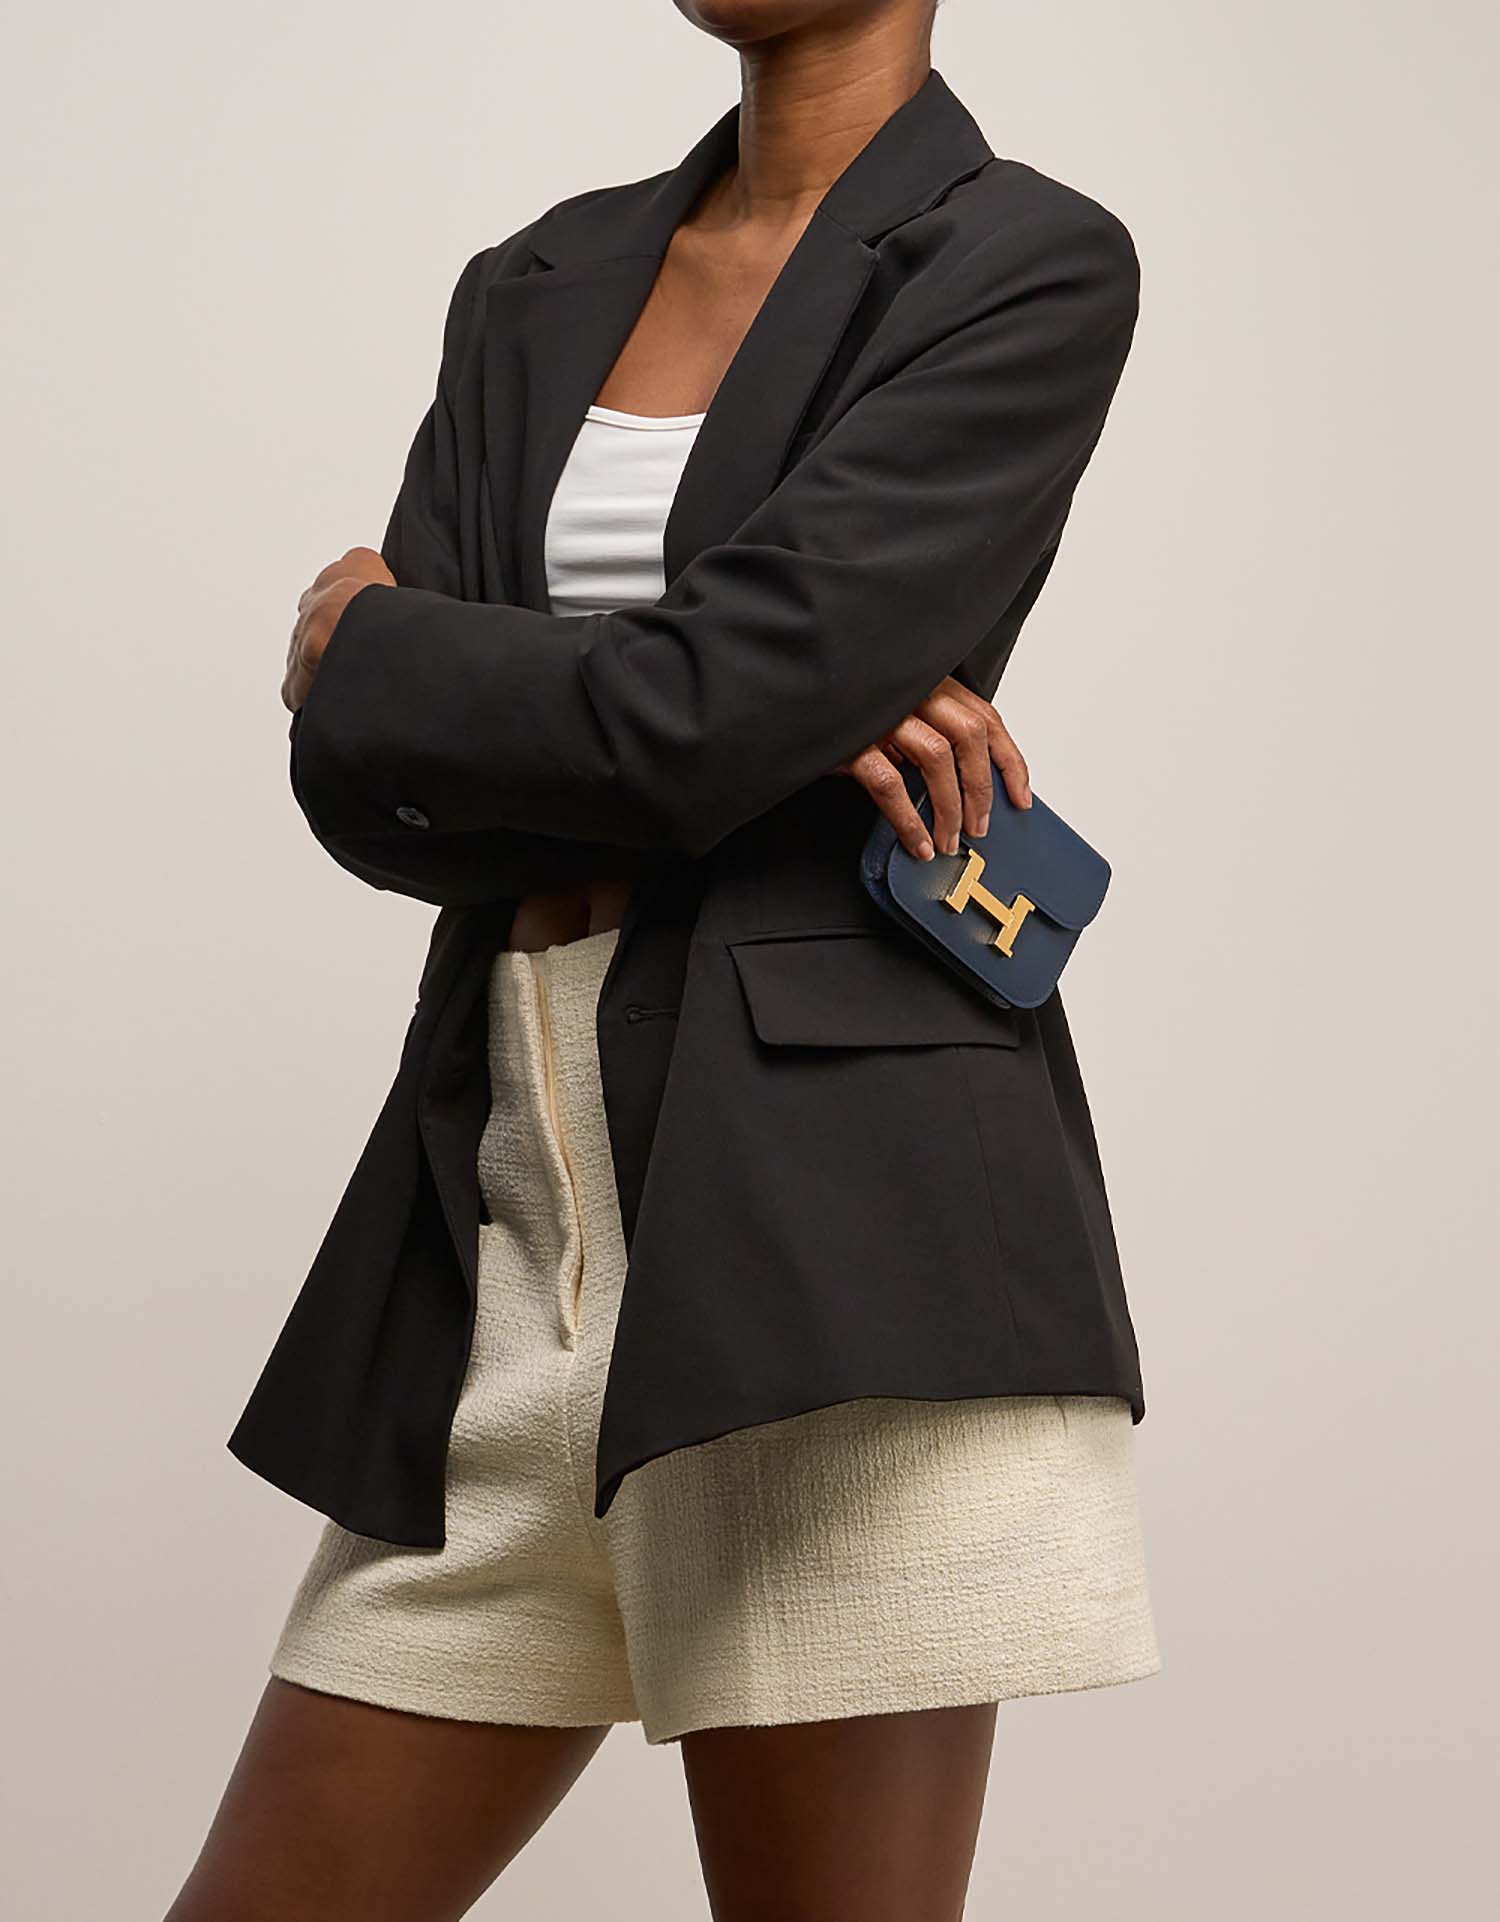 Hermès Constance SlimWallet BleuDePrusse on Model | Sell your designer bag on Saclab.com